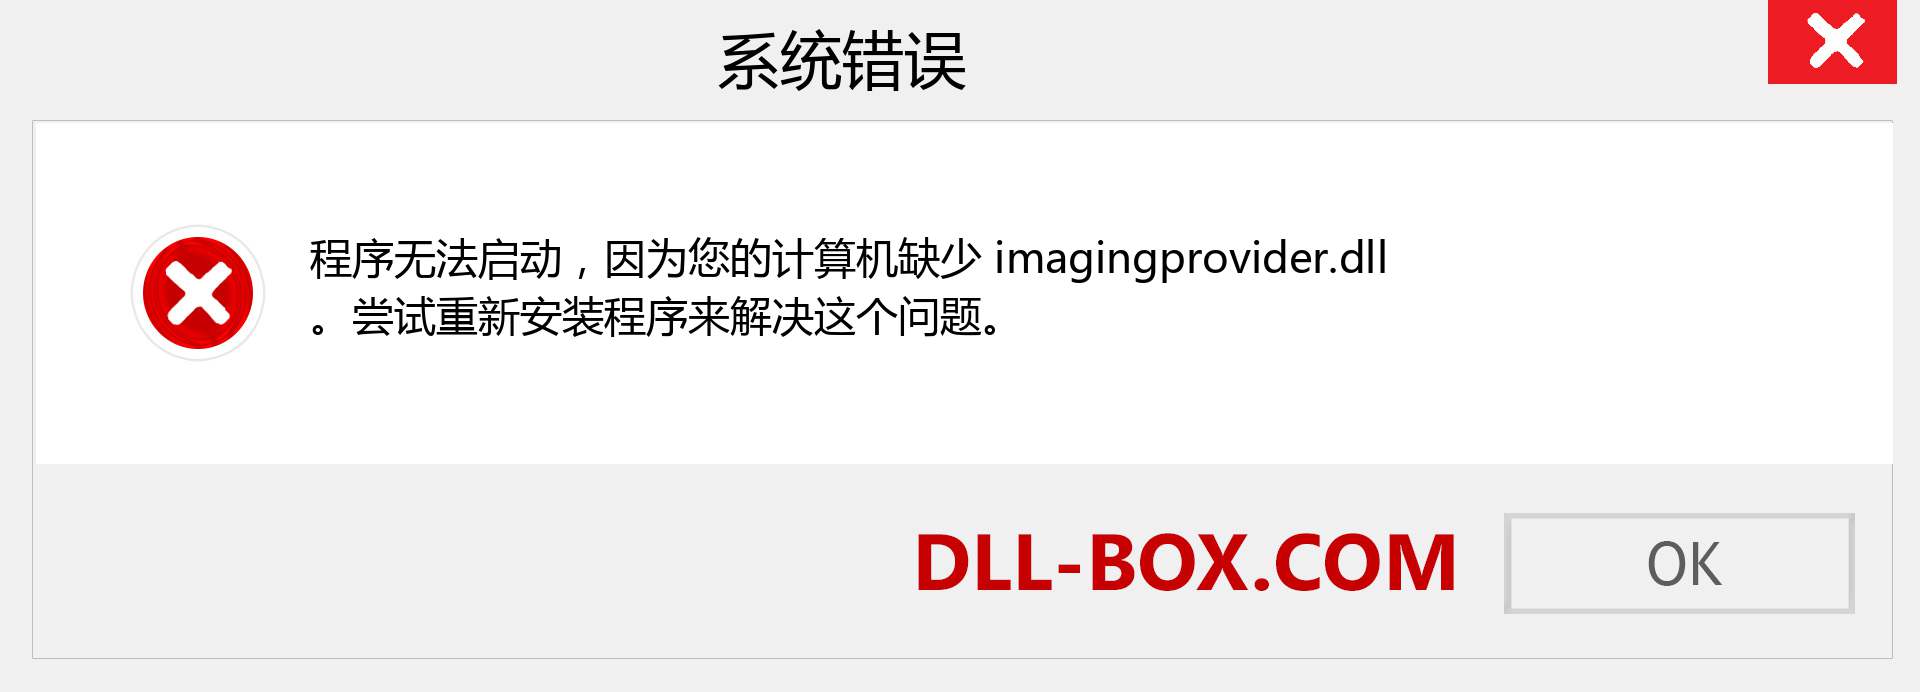 imagingprovider.dll 文件丢失？。 适用于 Windows 7、8、10 的下载 - 修复 Windows、照片、图像上的 imagingprovider dll 丢失错误